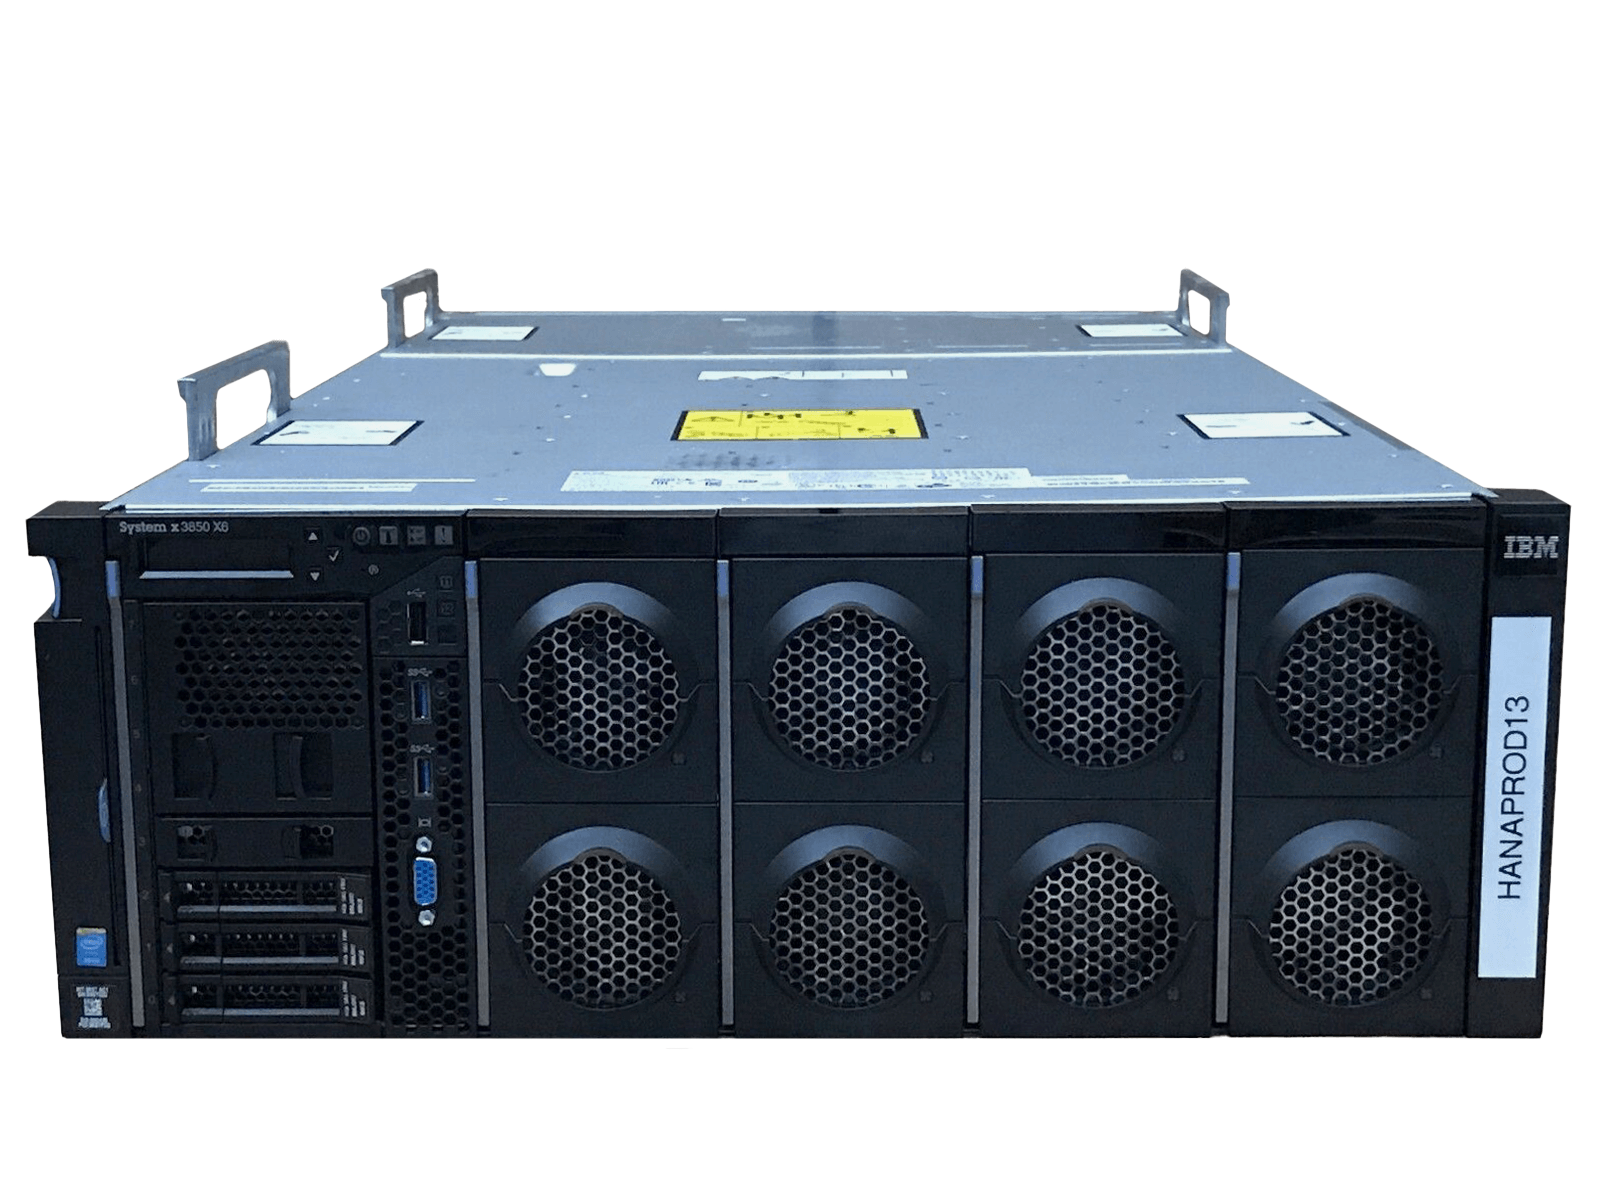 IBM x3850 X6 Server 4x Xeon E7-8880 v3 3072GB DDR4 RAM 3x 300GB 10K 4x 1400W PSU